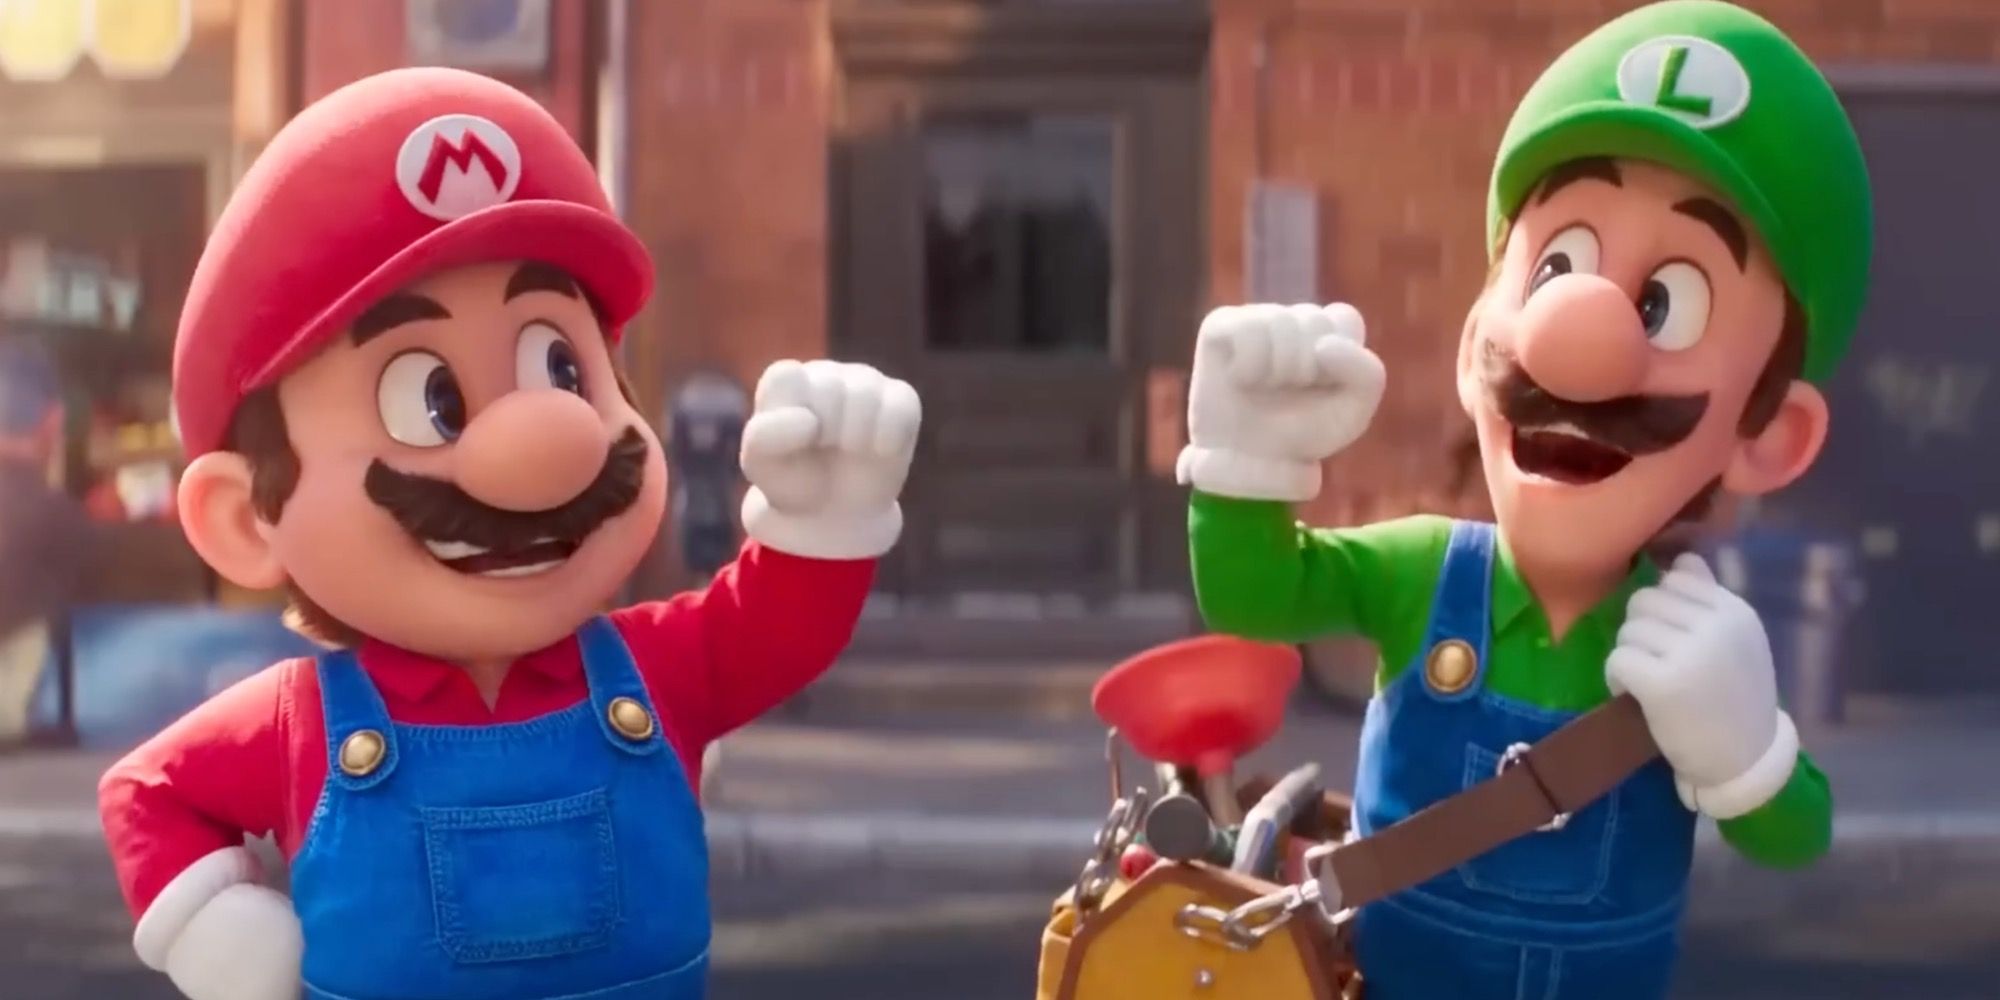 Mario and Luigi in The Super Mario Bros. Movie